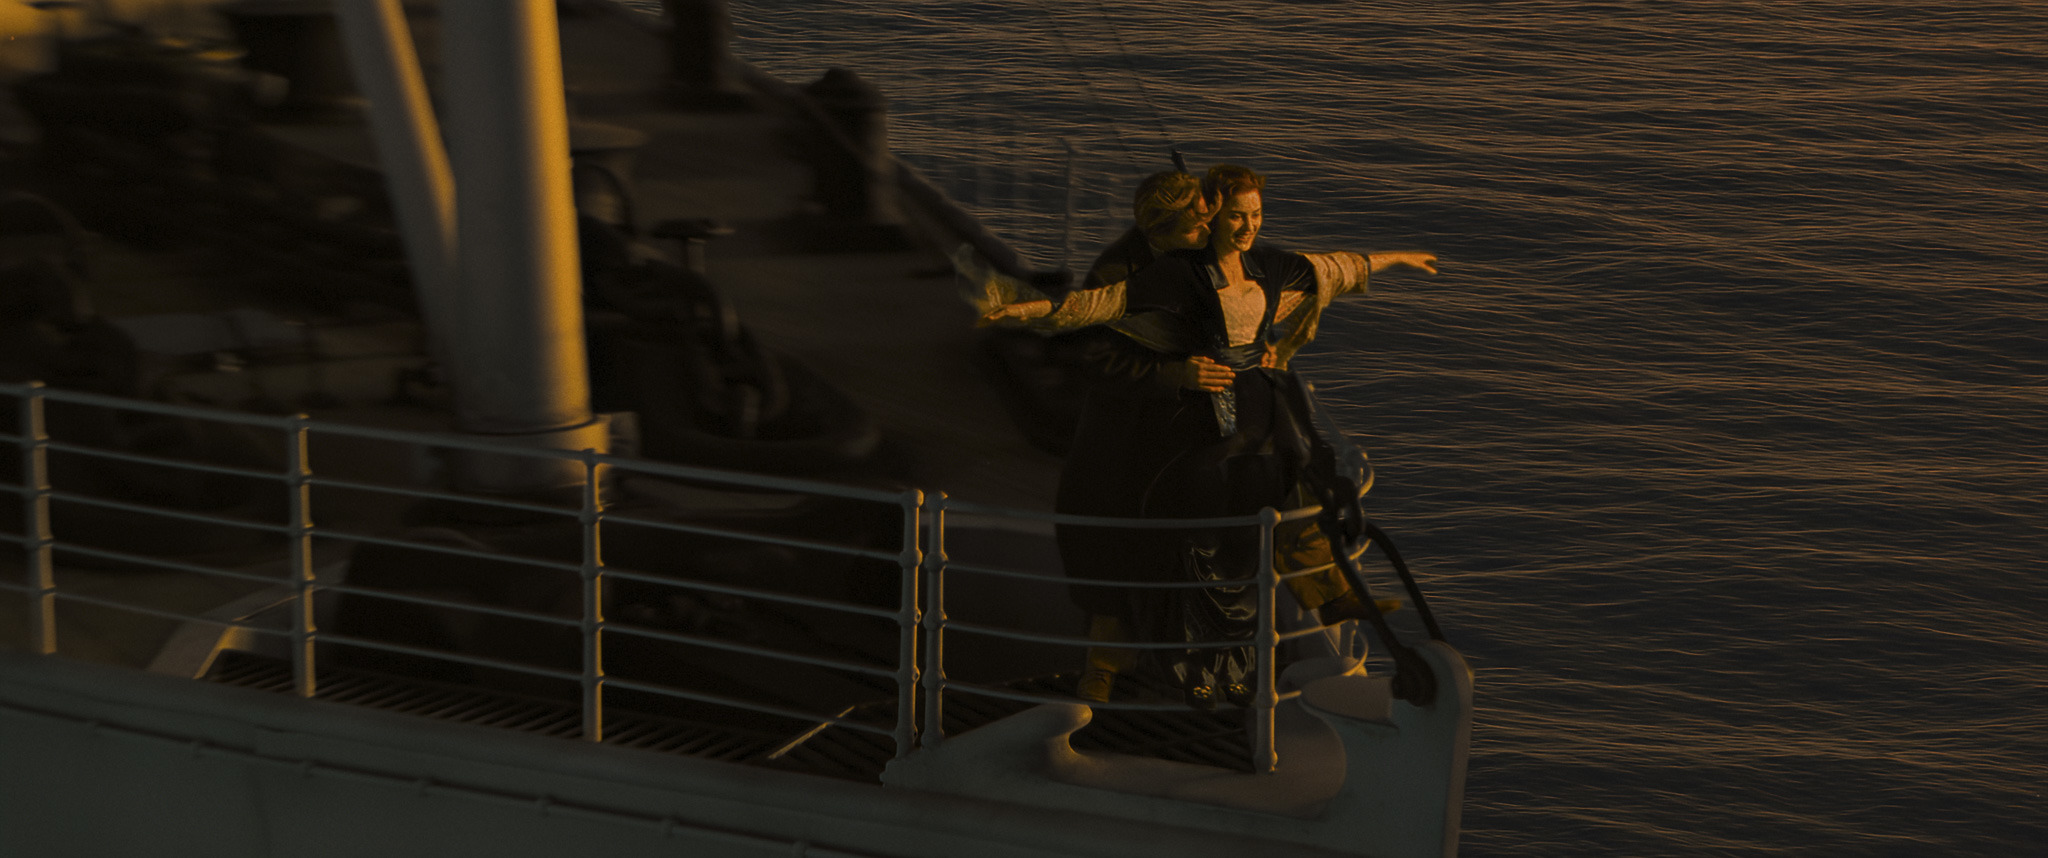 Titanic, dal 9 febbraio nelle sale italiane per San Valentino, in occasione del 25° anniversario, torna nelle sale in una versione rimasterizzata in 3D